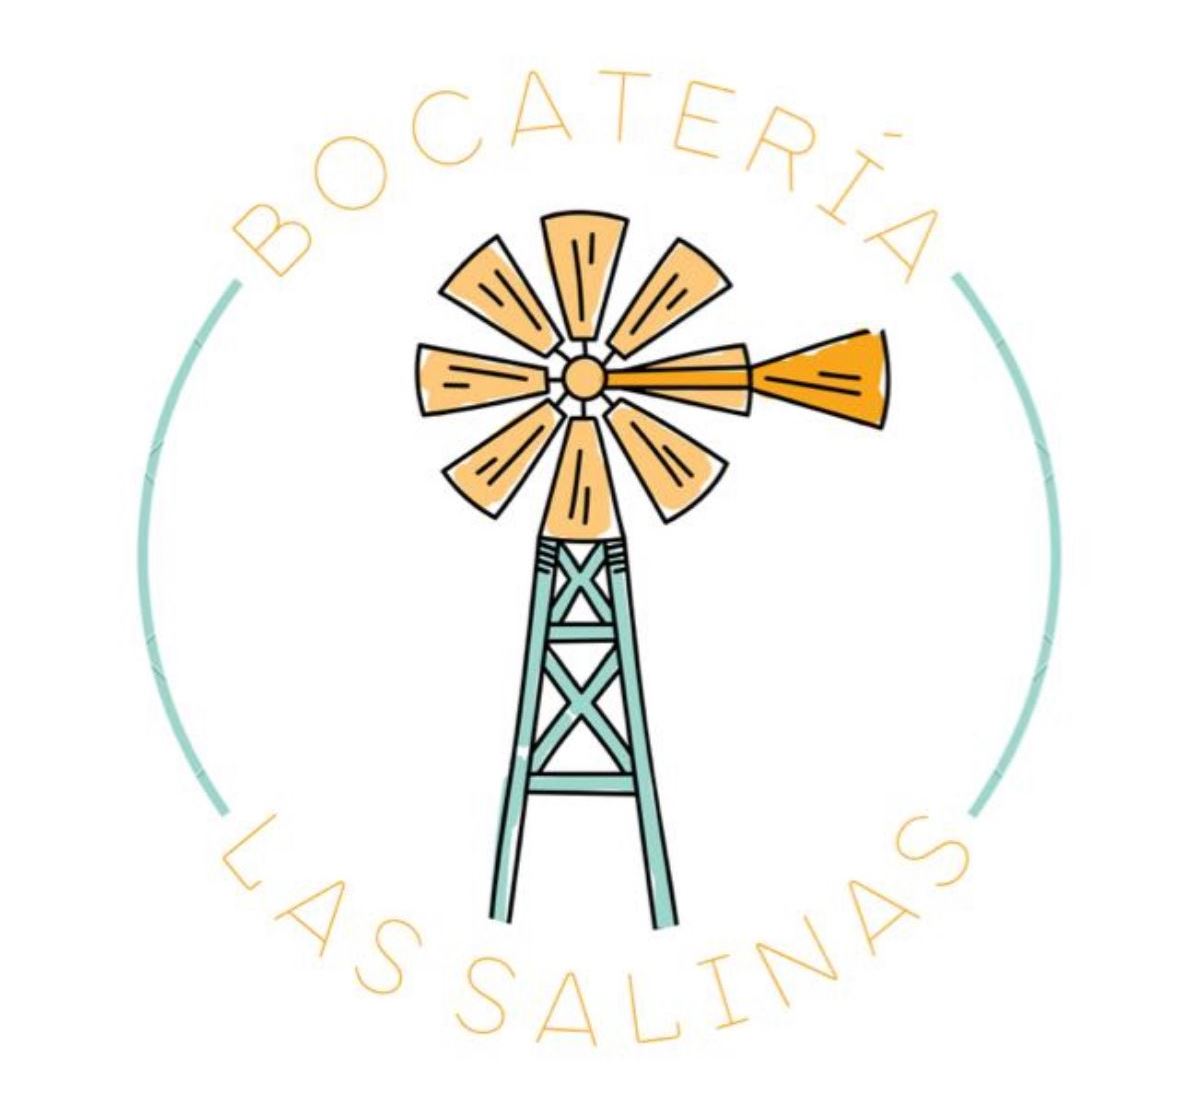 Bocateria Las Salinas - Punta Mujeres